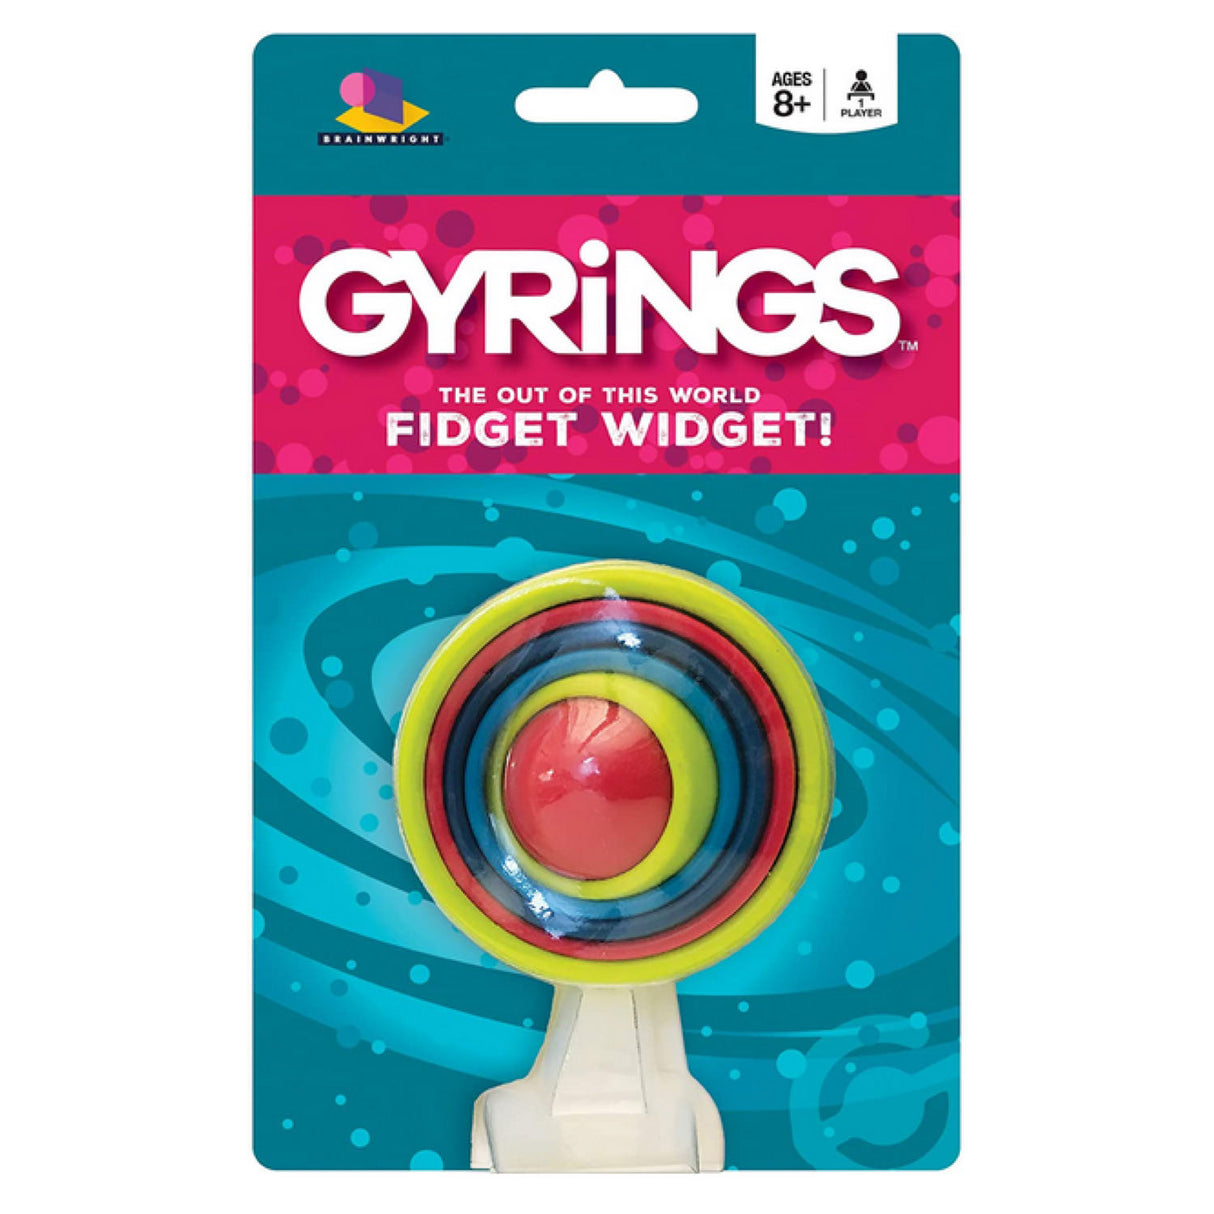 Gyrings Fidget Widget